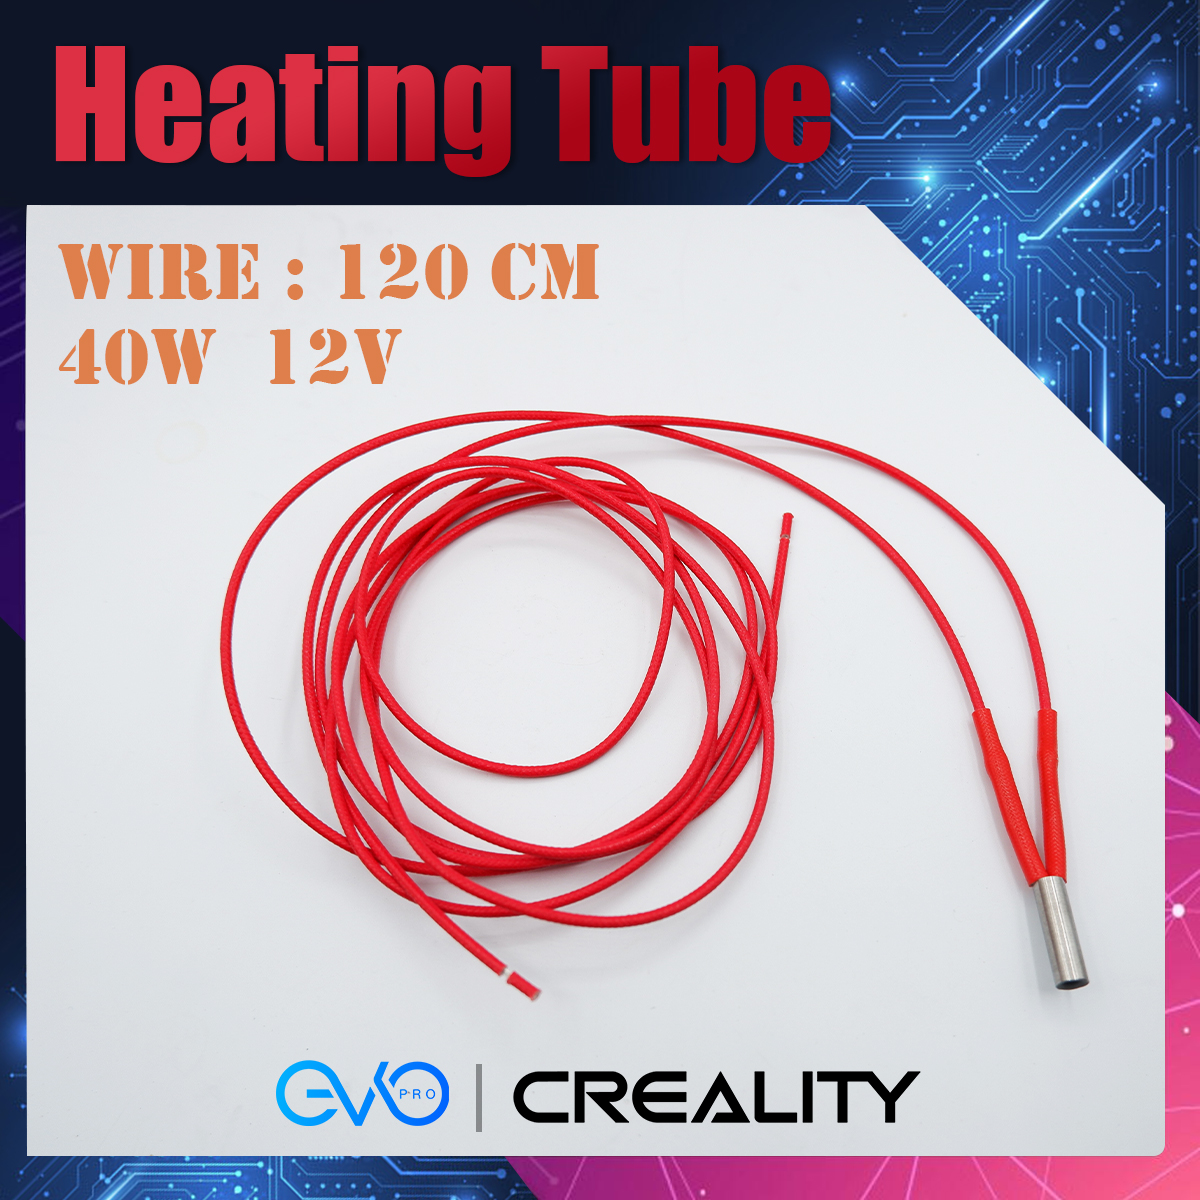 Heating tube